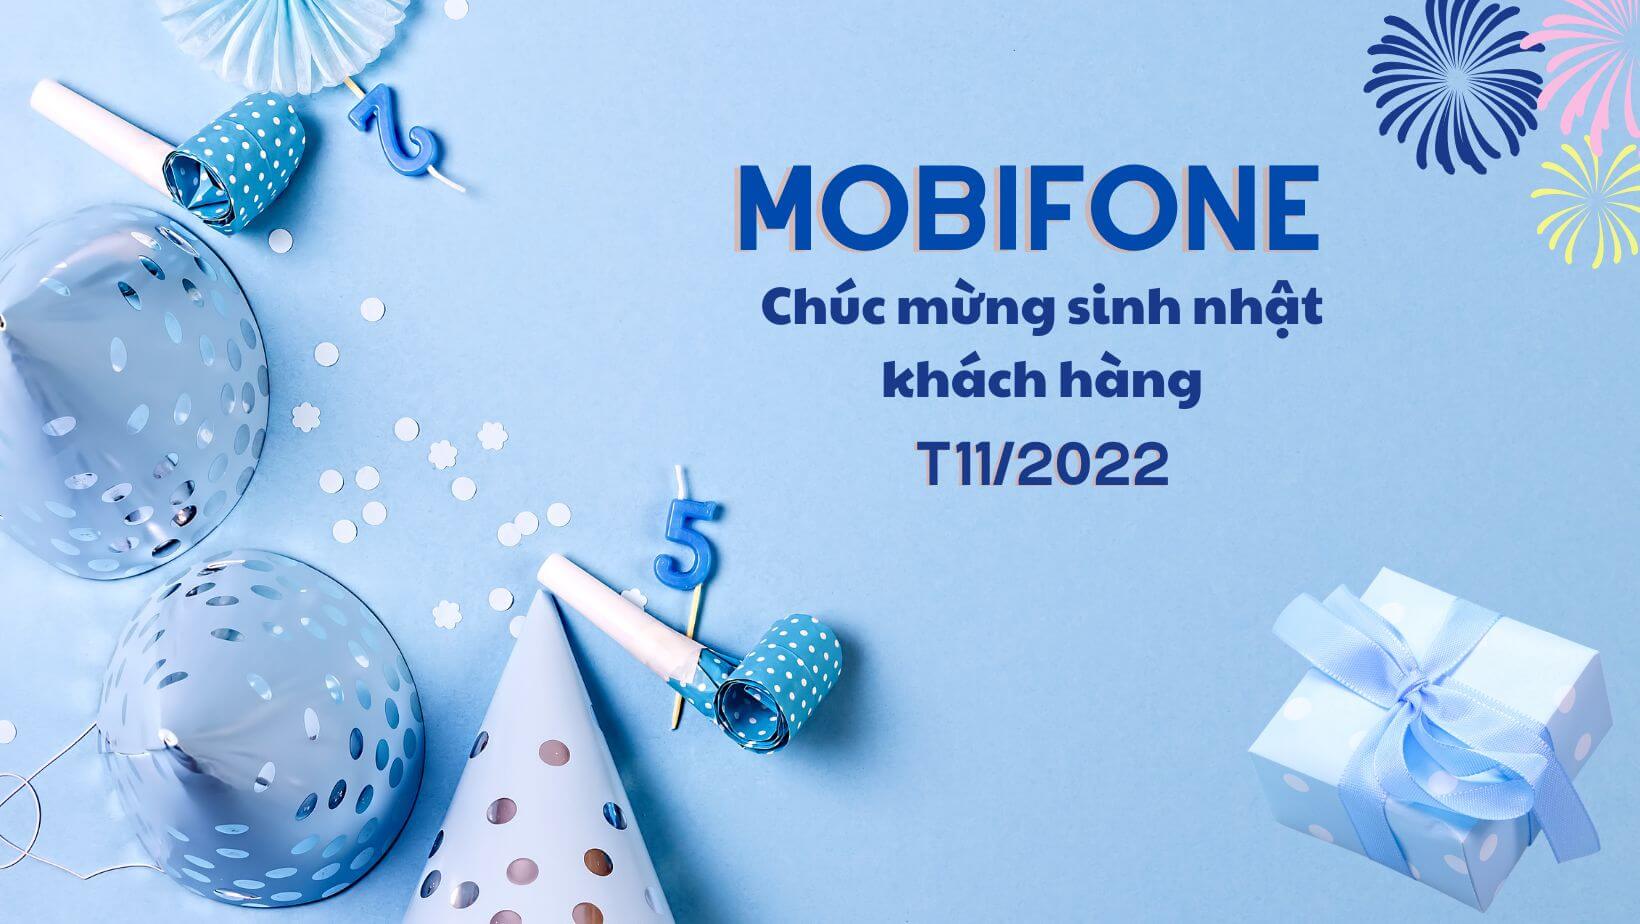 QUÀ TẶNG SINH NHẬT CỦA MOBIFONE THÁNG 7 2021 GIÁ TRỊ LÊN ĐẾN 500K   Mobifone Data